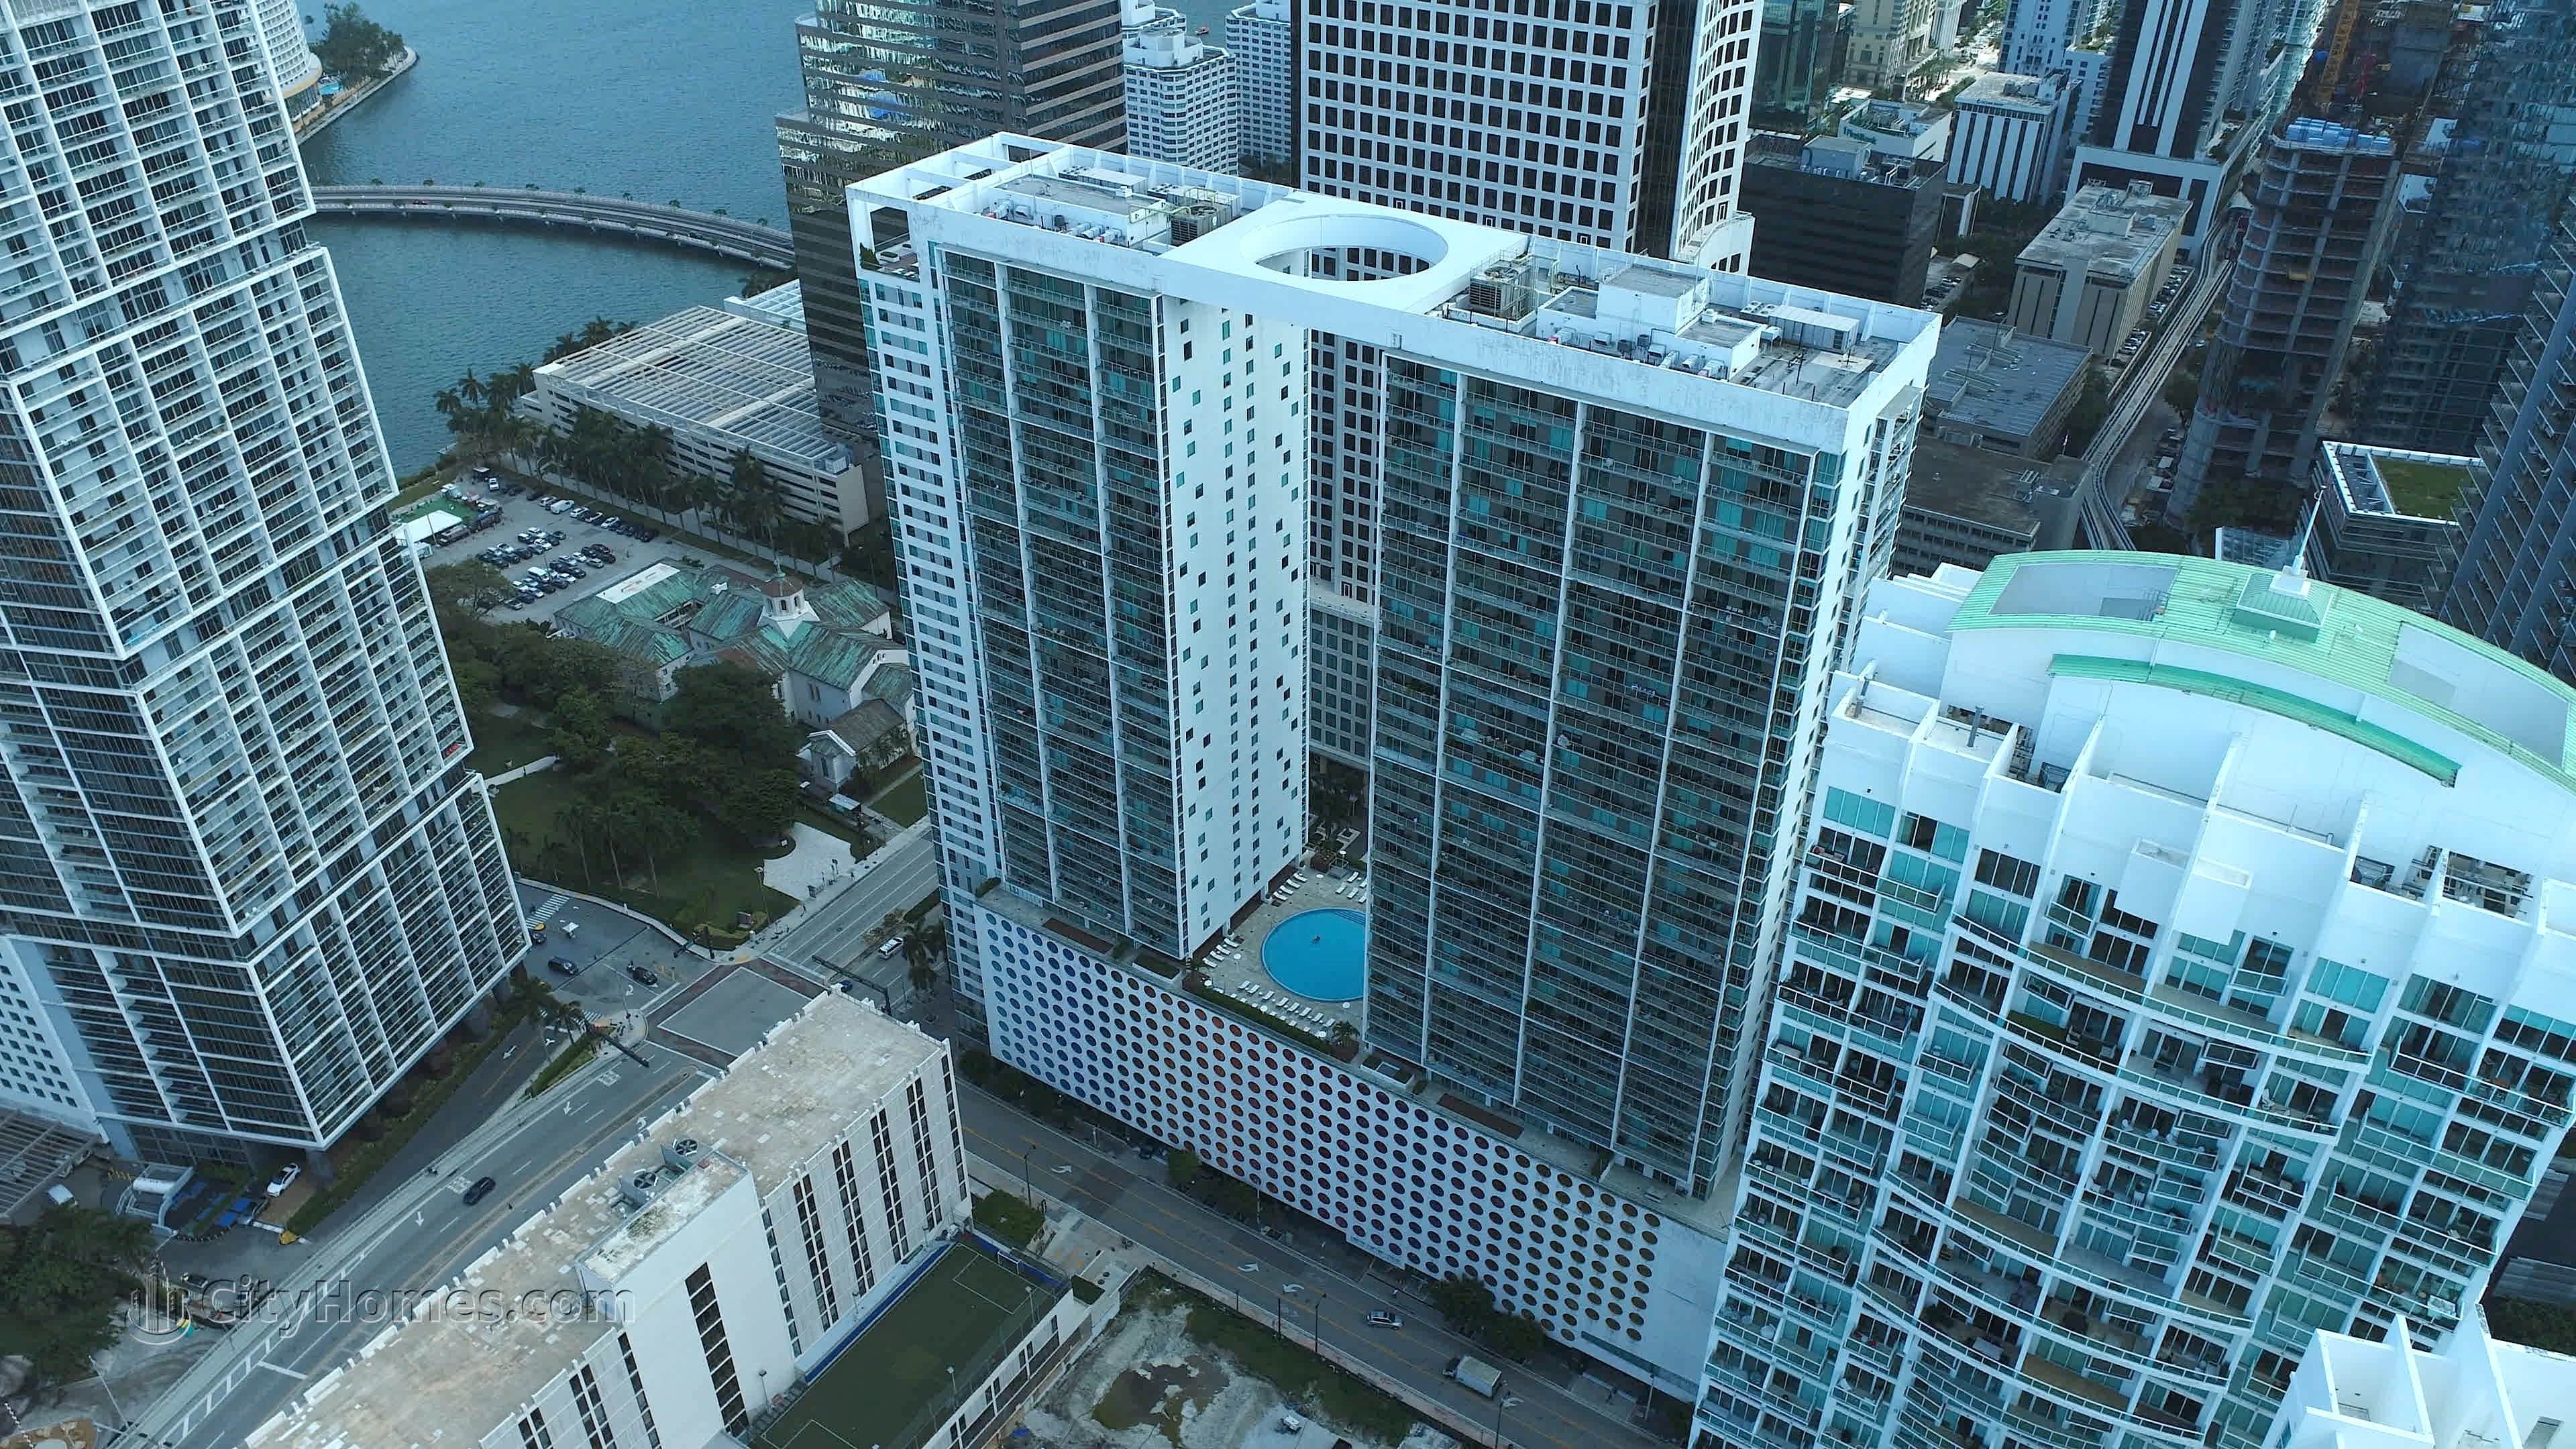 500 Brickell East κτίριο σε 500 Brickell Avenue, Miami, FL 33131